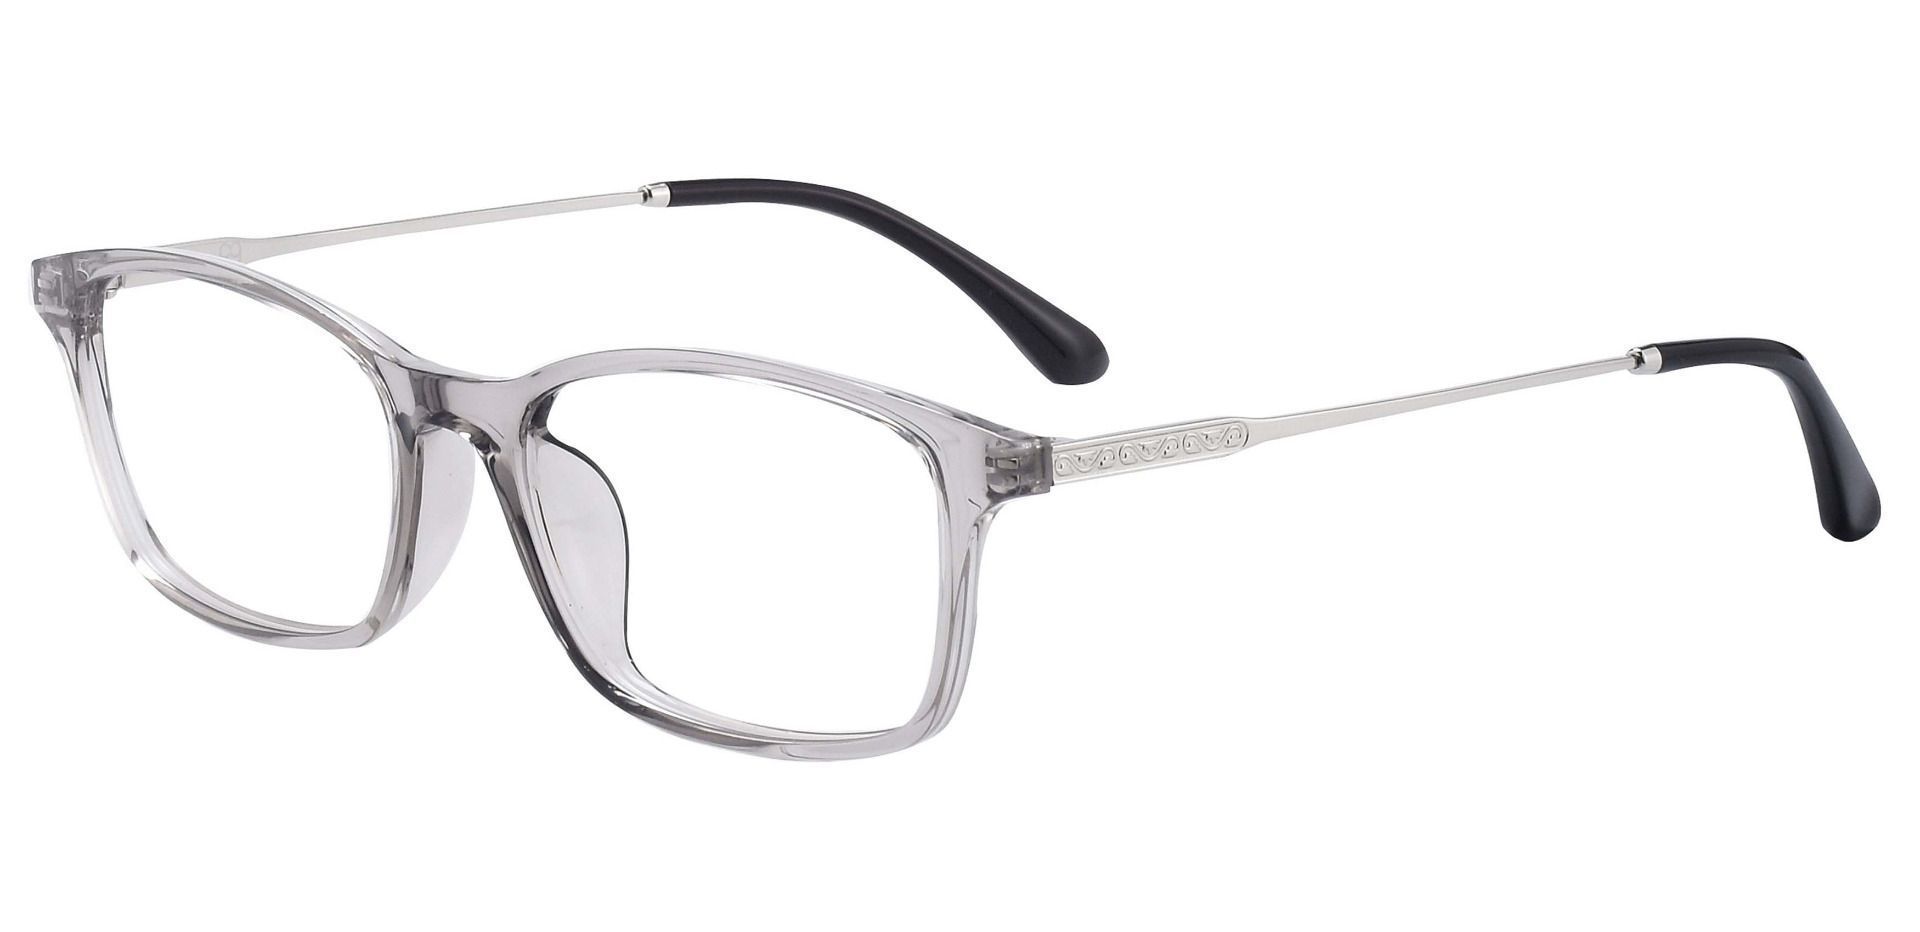 Mira Rectangle Progressive Glasses - Gray | Women's Eyeglasses | Payne ...